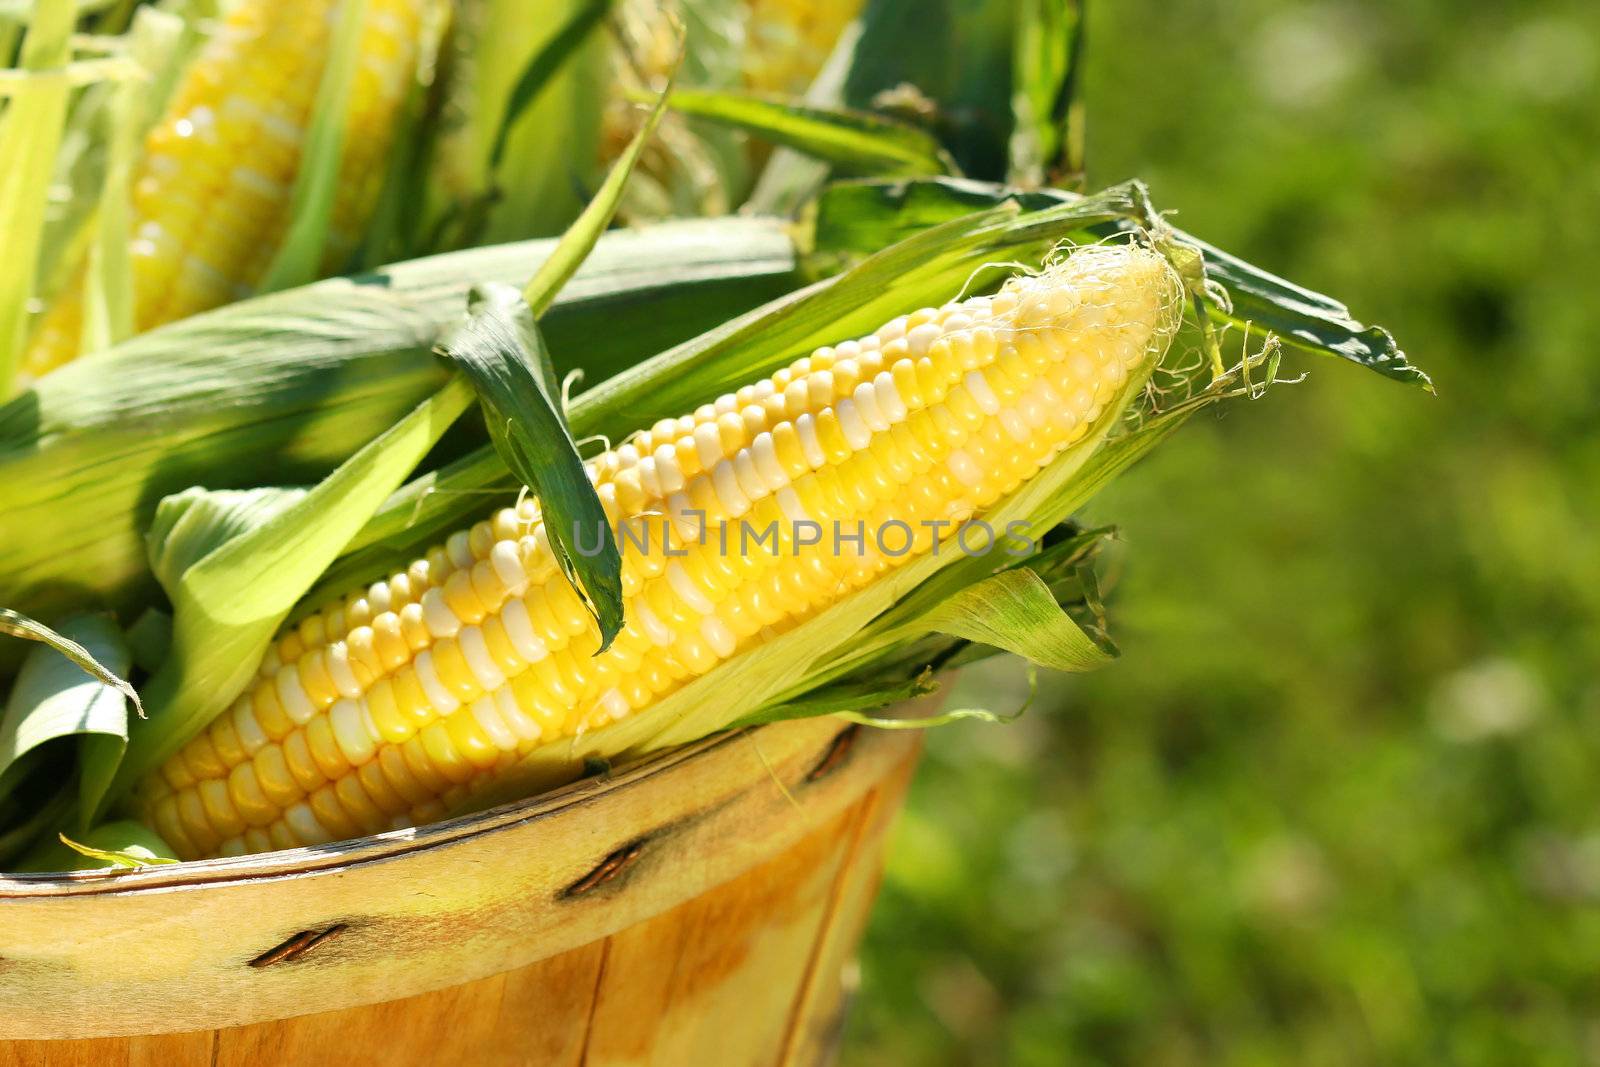 Ears of corn in an apple basket